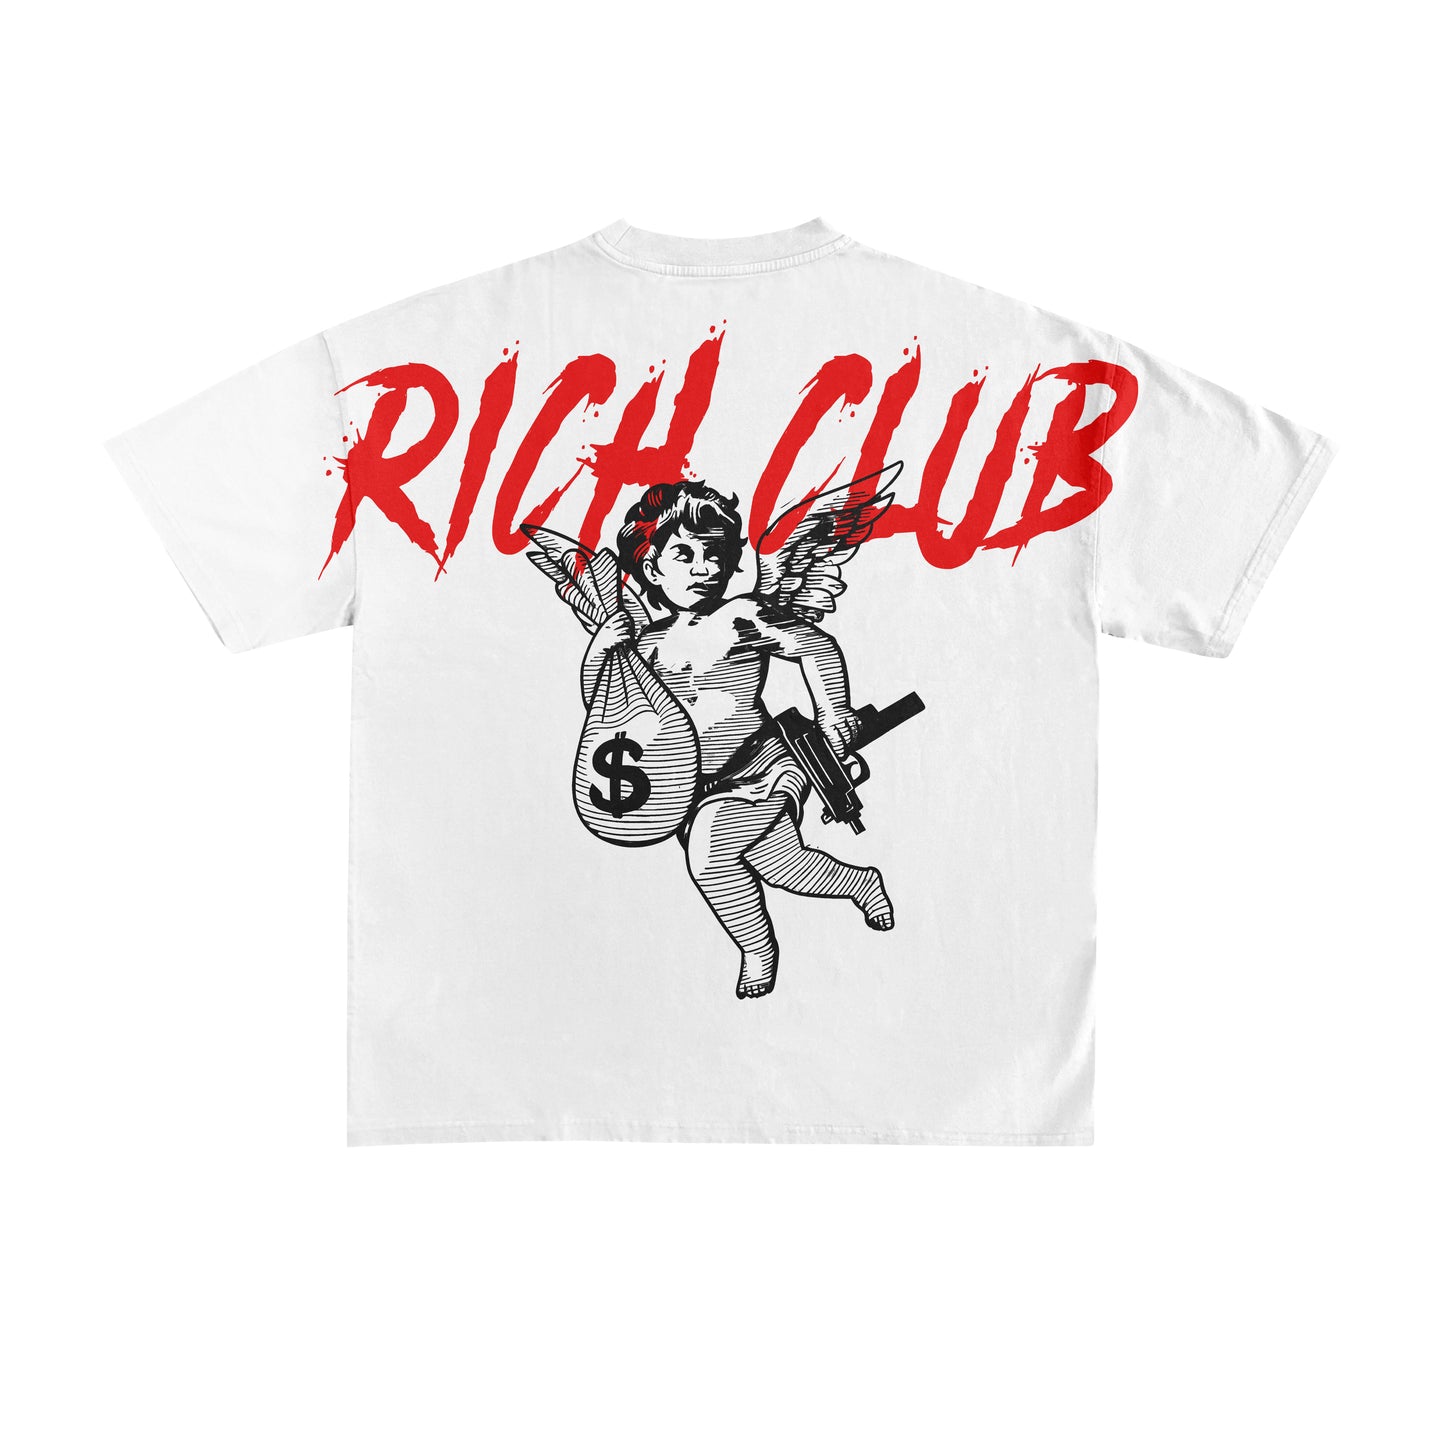 Rich Club T-shirt (White)